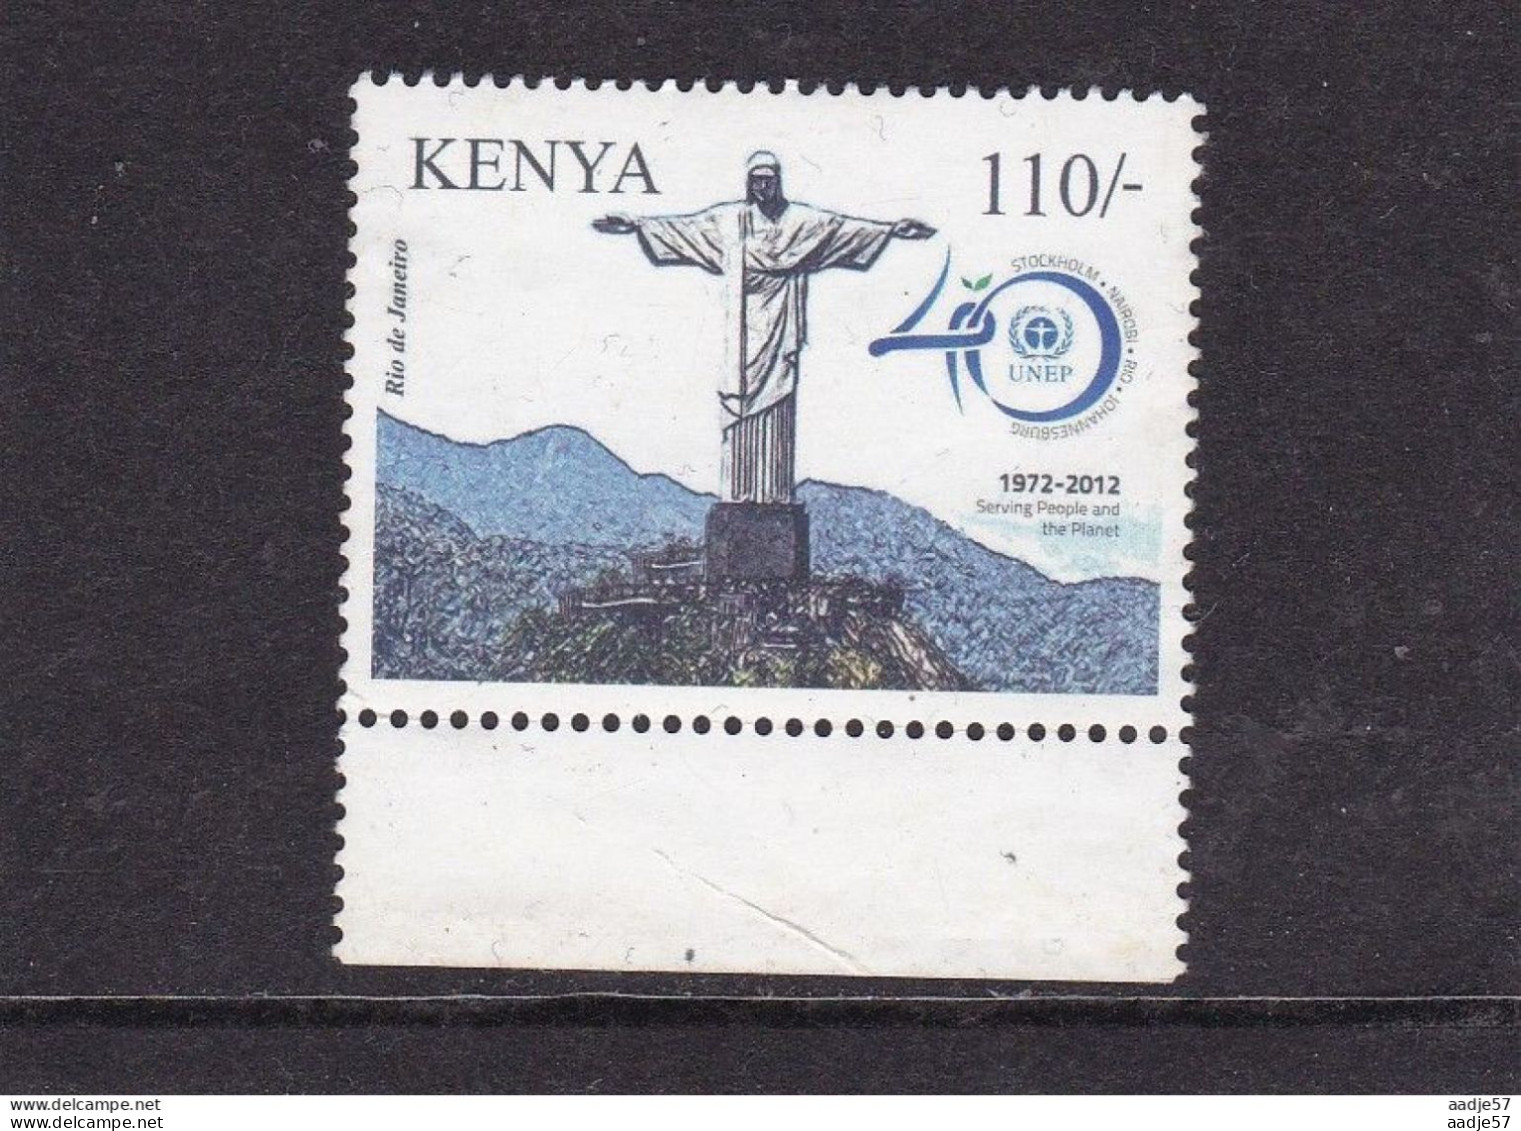 Kenya 2012 UNEP 110sh MNH** - Kenia (1963-...)